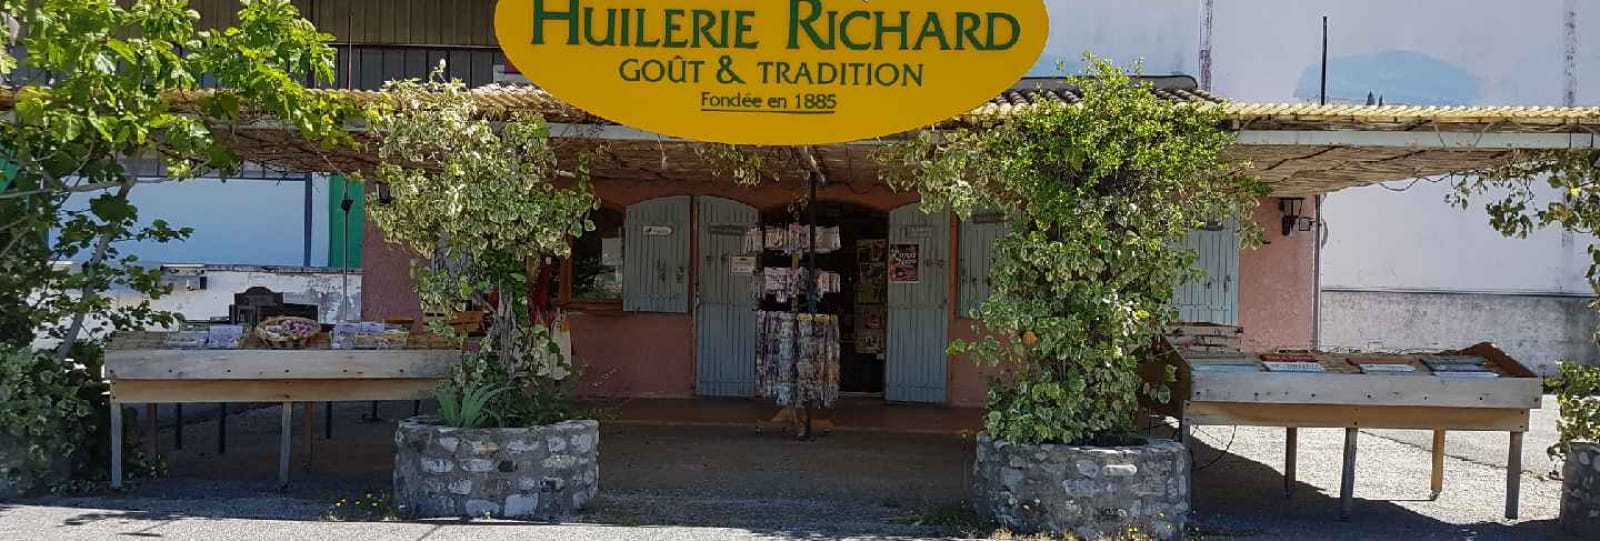 Boutique de l'Huilerie Richard